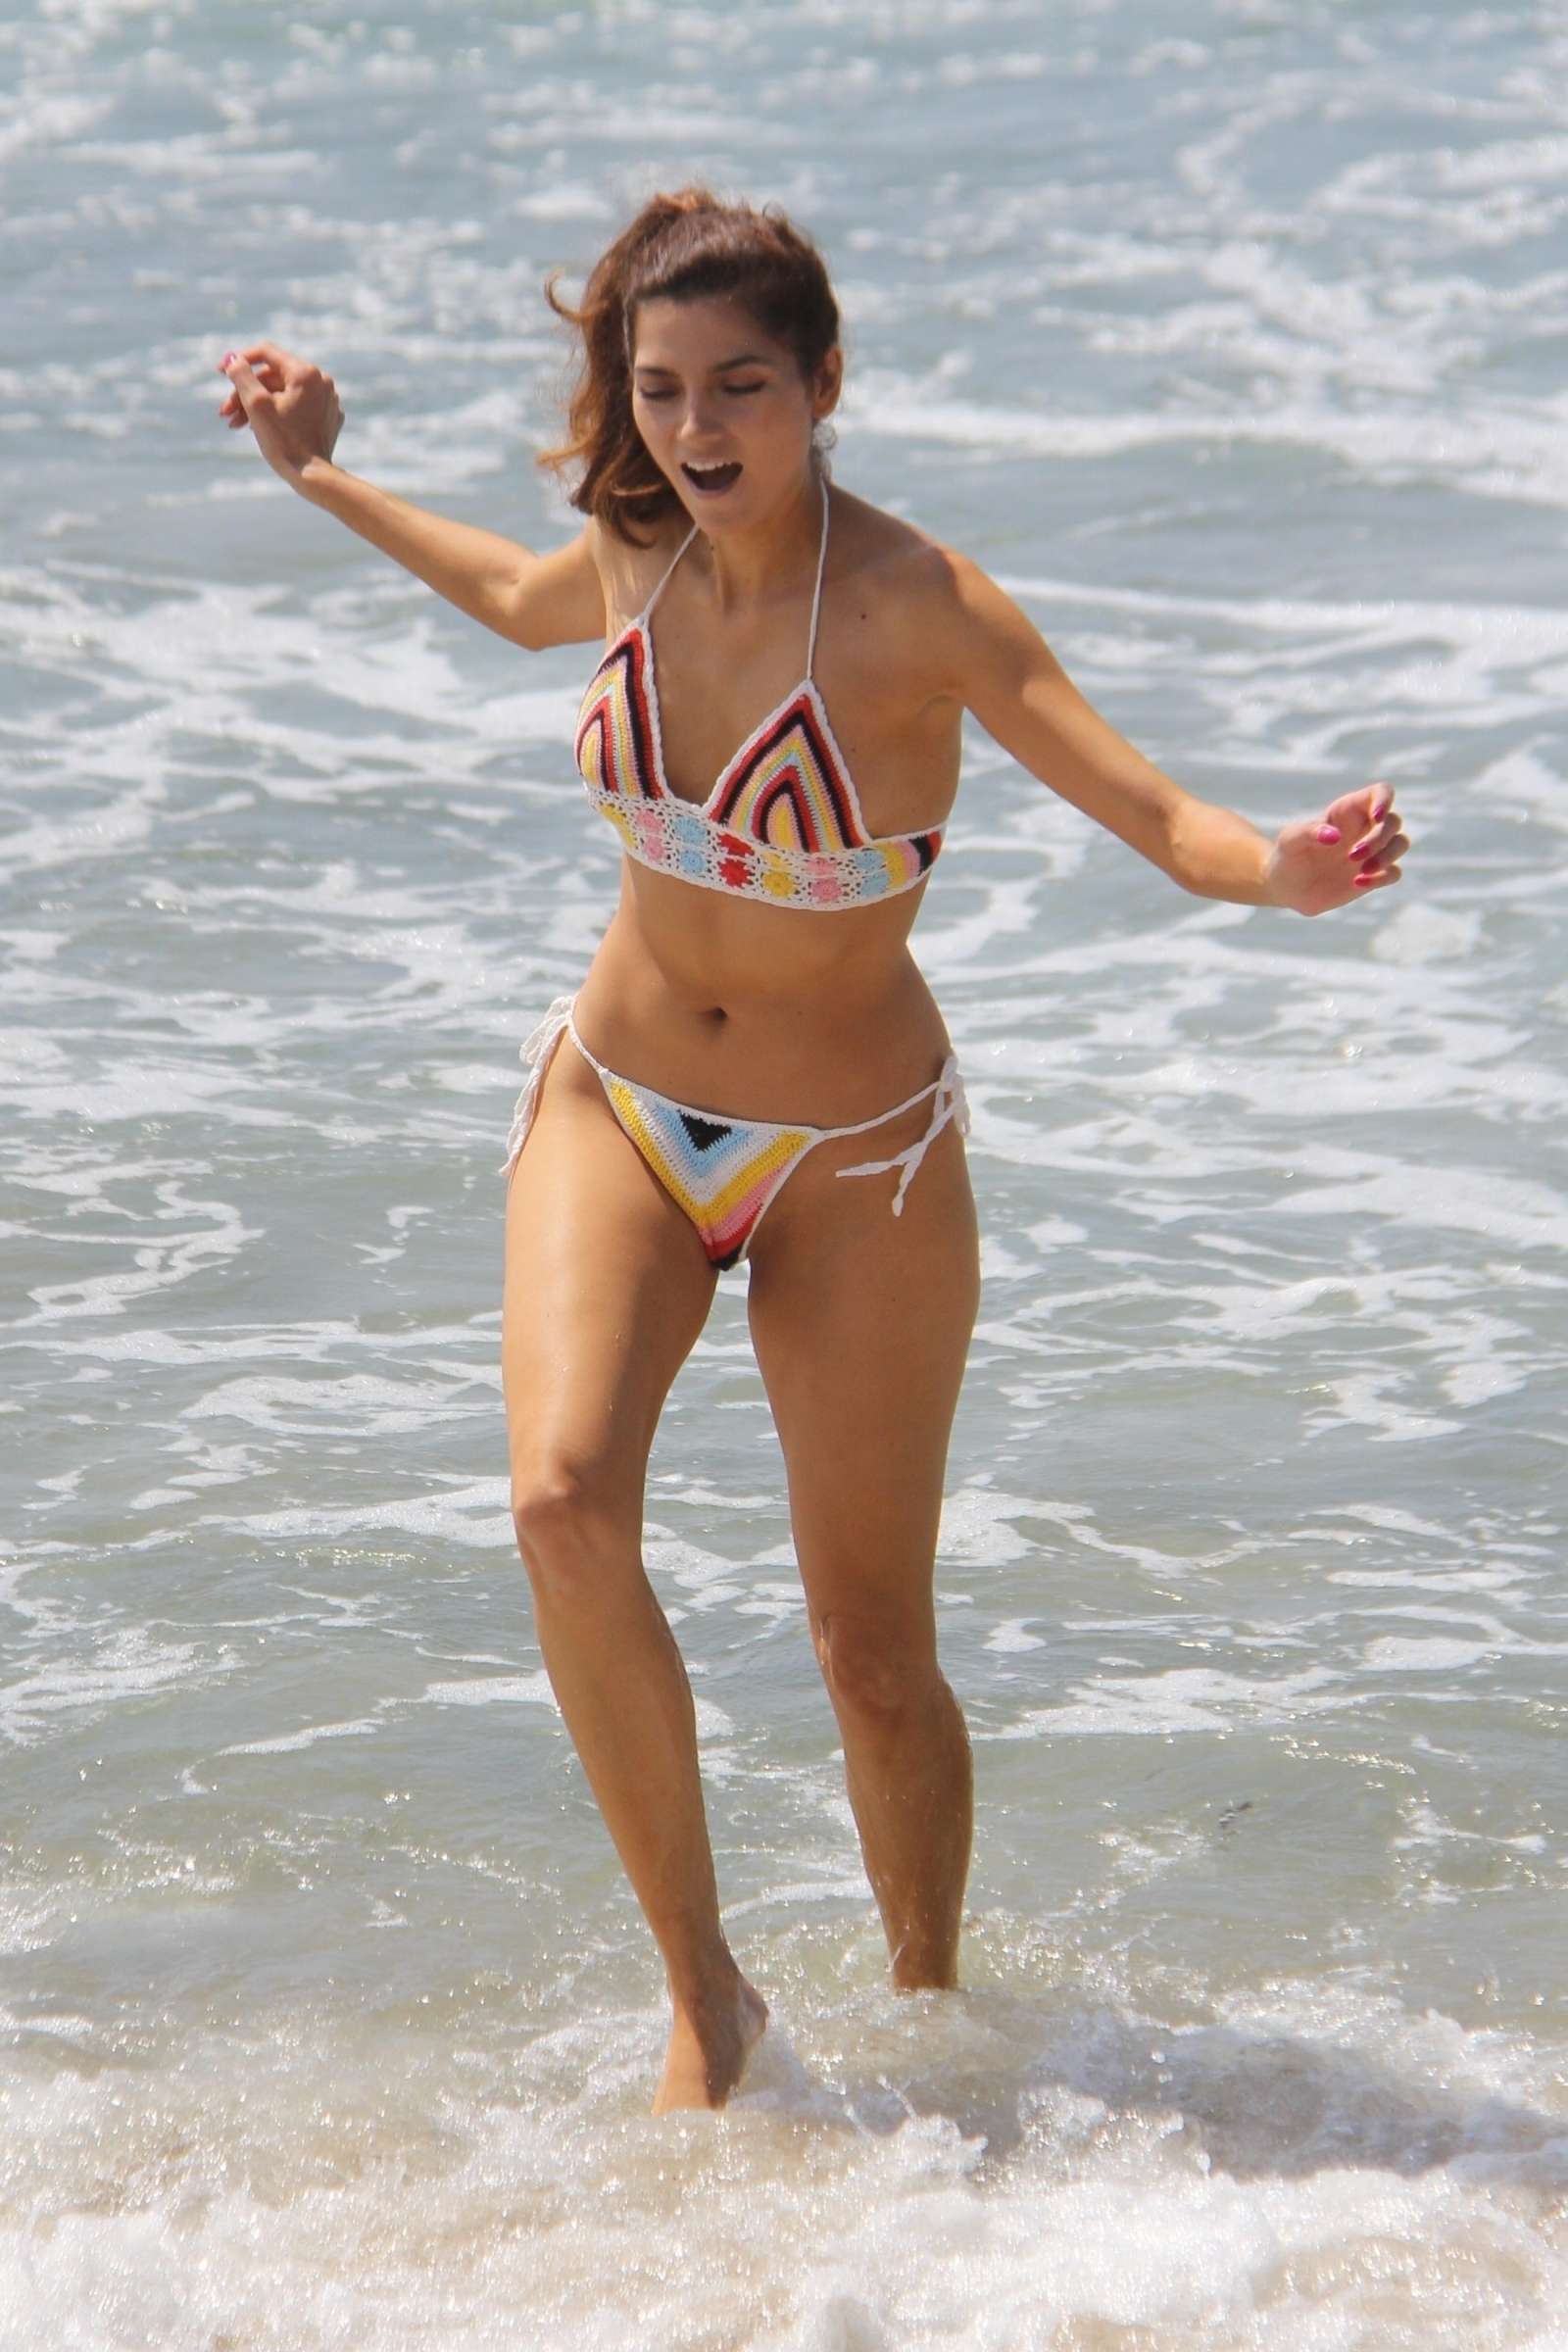 Blanca Blanco in Colourful Bikini on the beach in Malibu